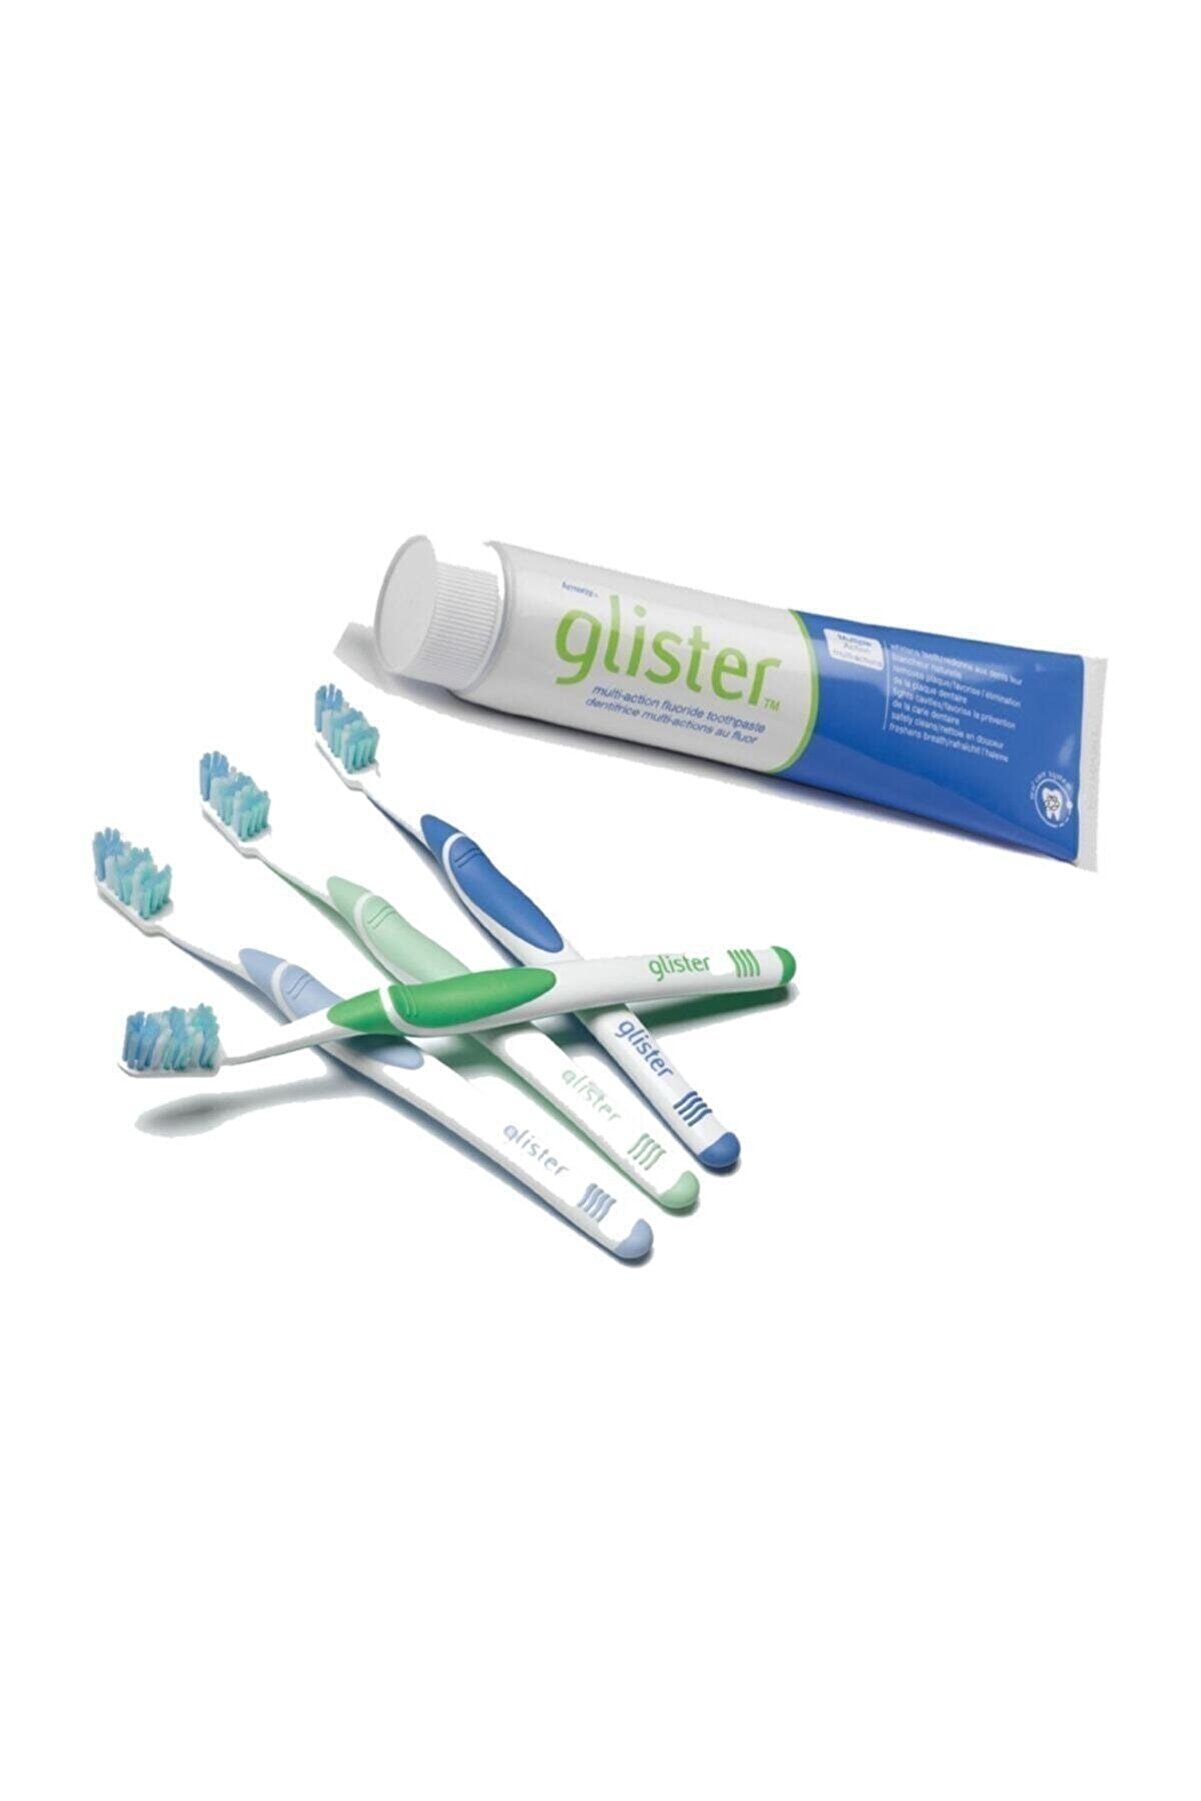 Amway Glister 4lü Diş Fırçası- Glister Florürlü Diş Macunu 150ml Görseldeki Ürünler Gönderiliyorl